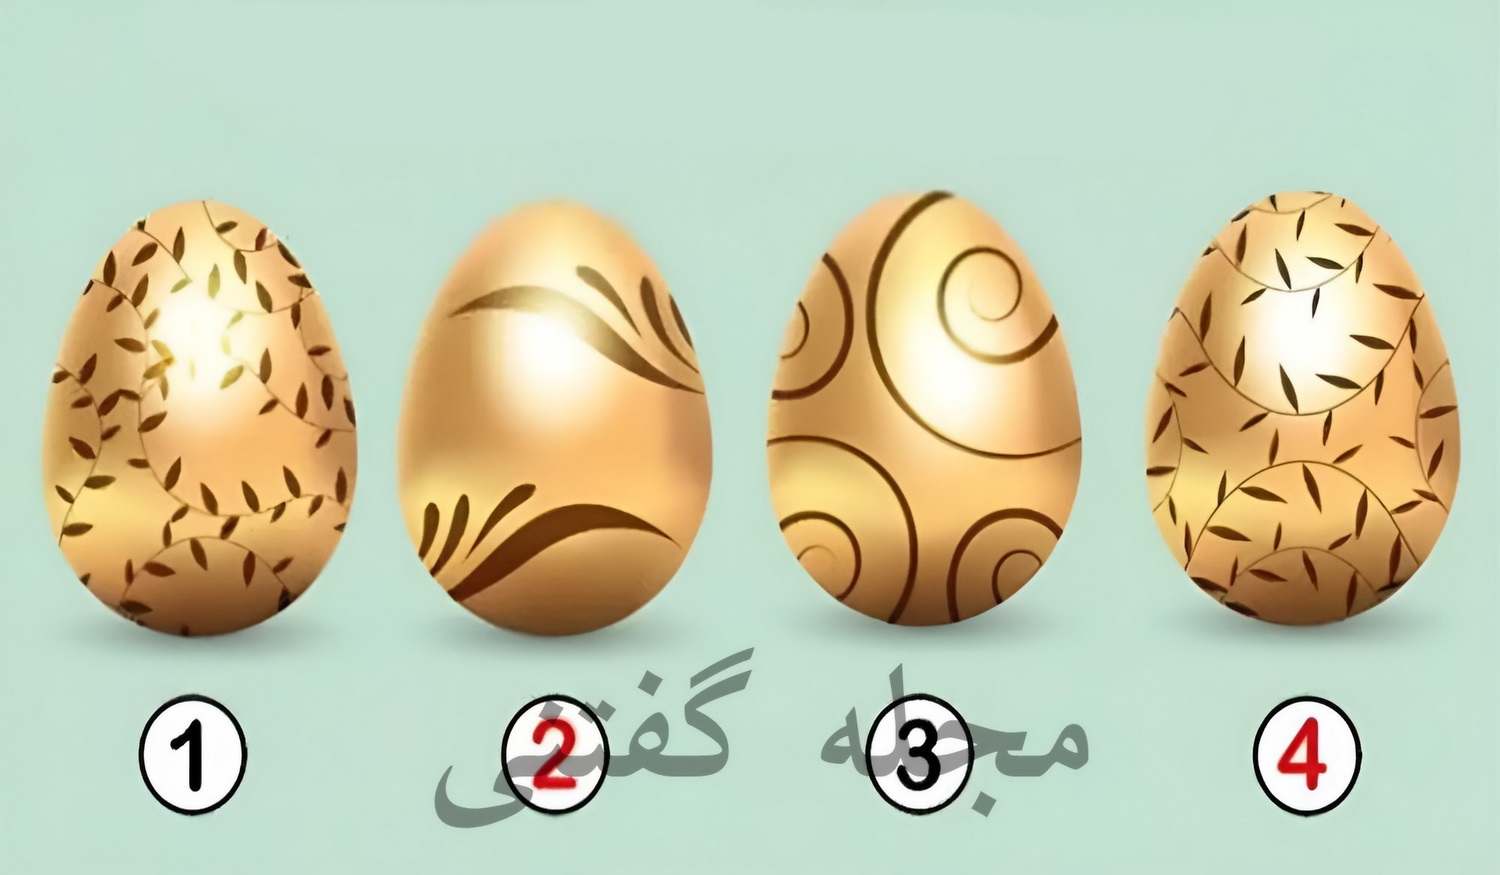 تست شخصیت با تخم مرغ های طلایی 1